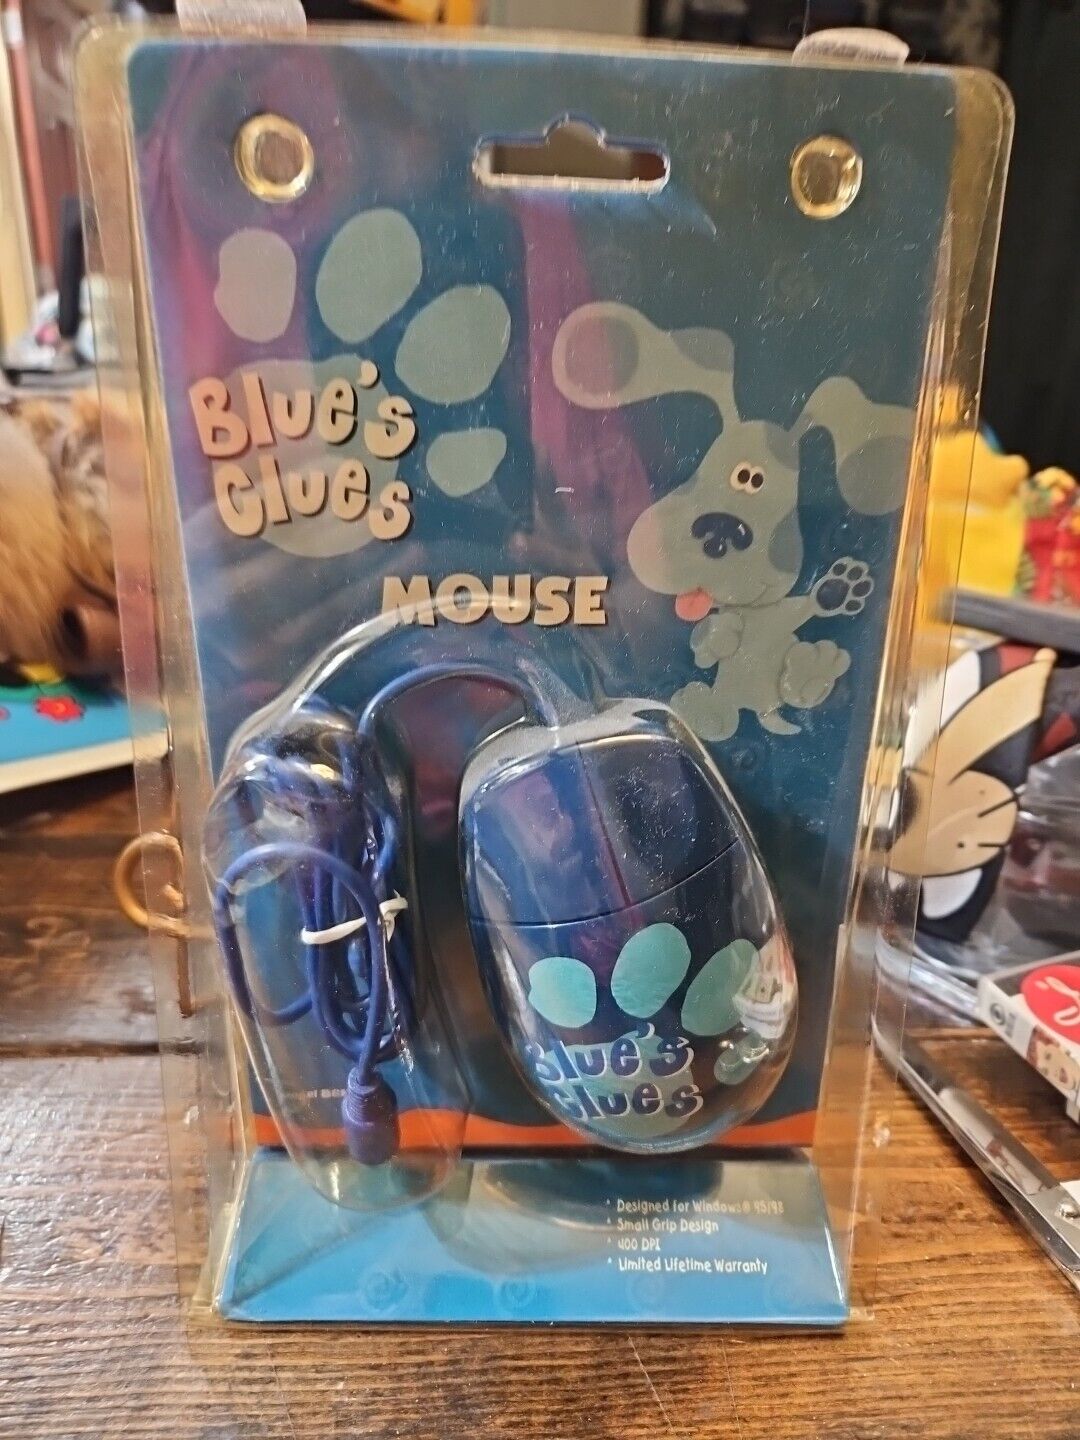 Vintage blue's clues computer mouse.